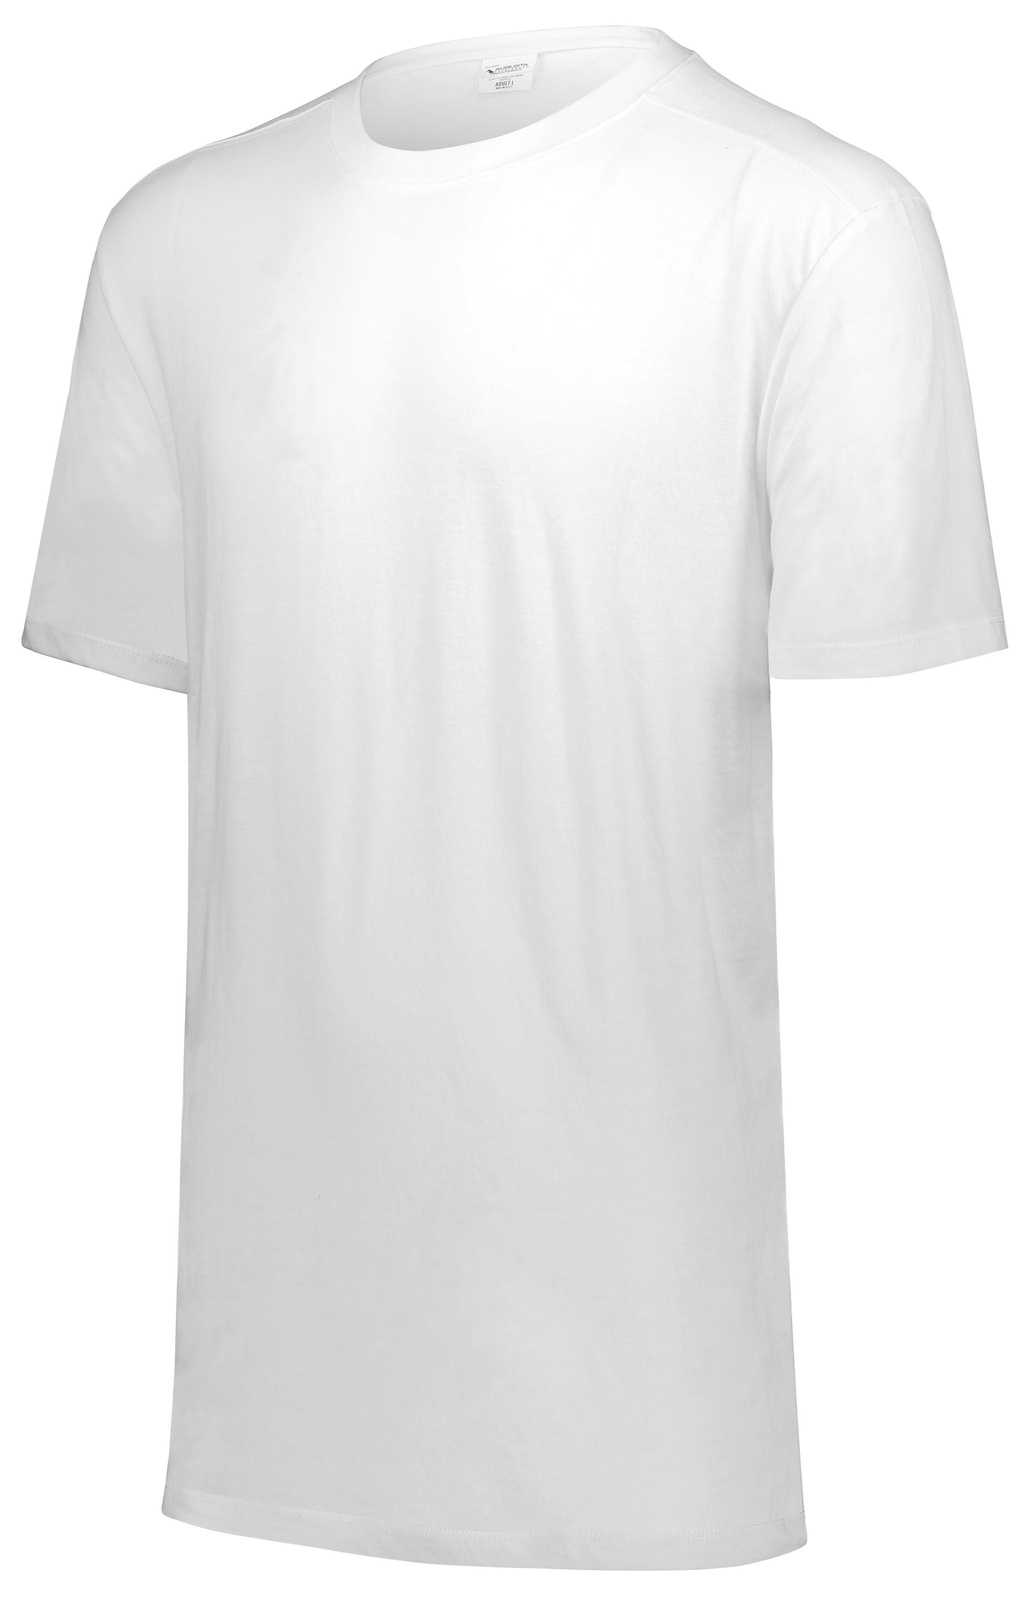 Augusta 3065 Tri-Blend T-Shirt - White - HIT a Double